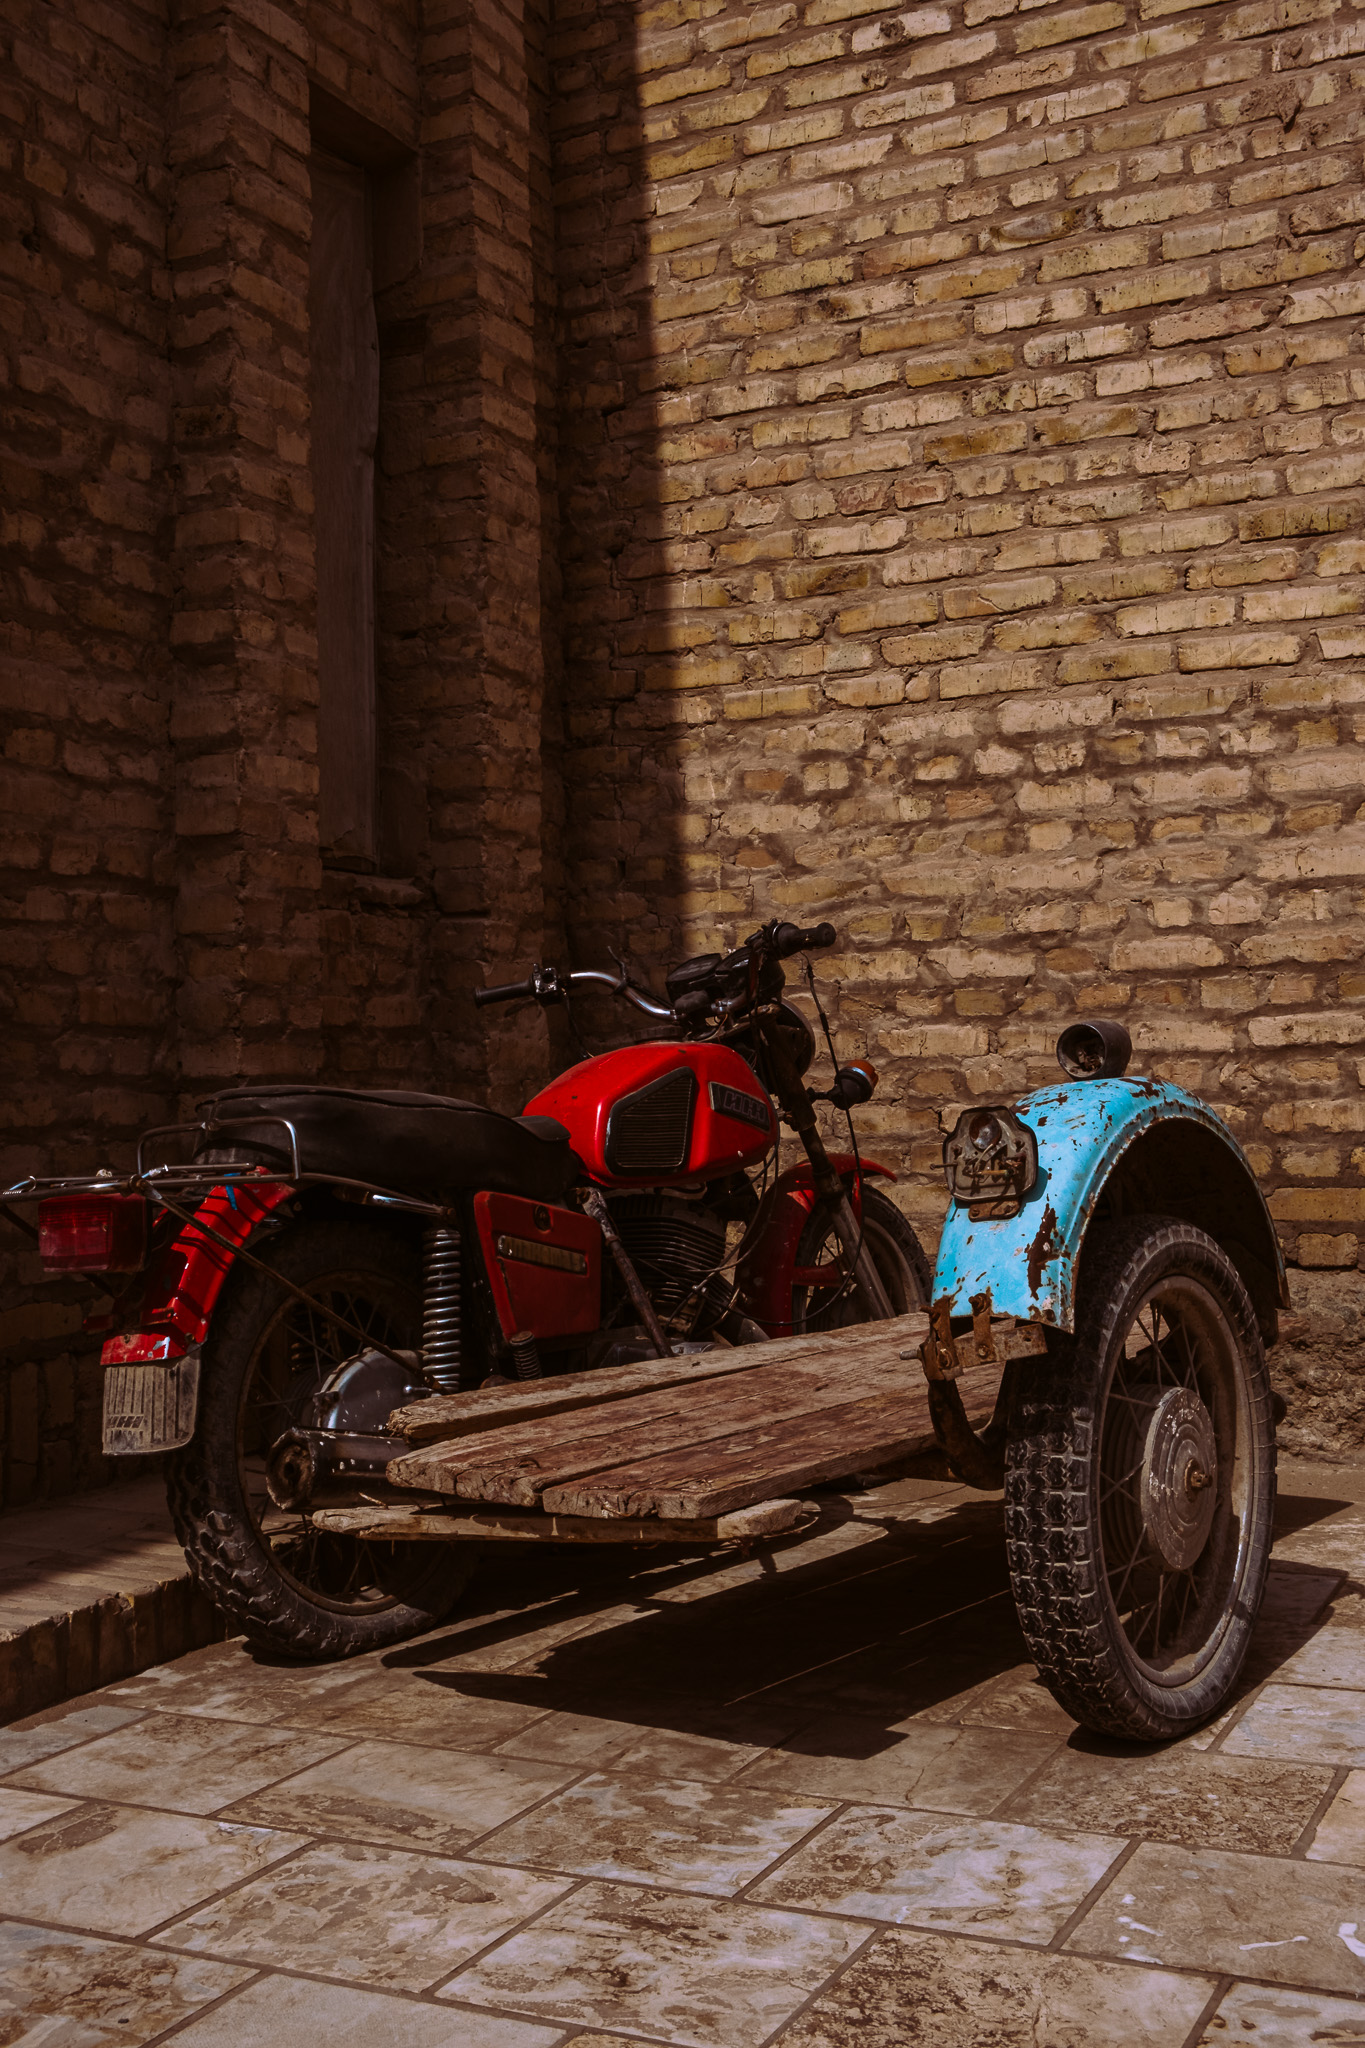 Old Motorbike in Khiva